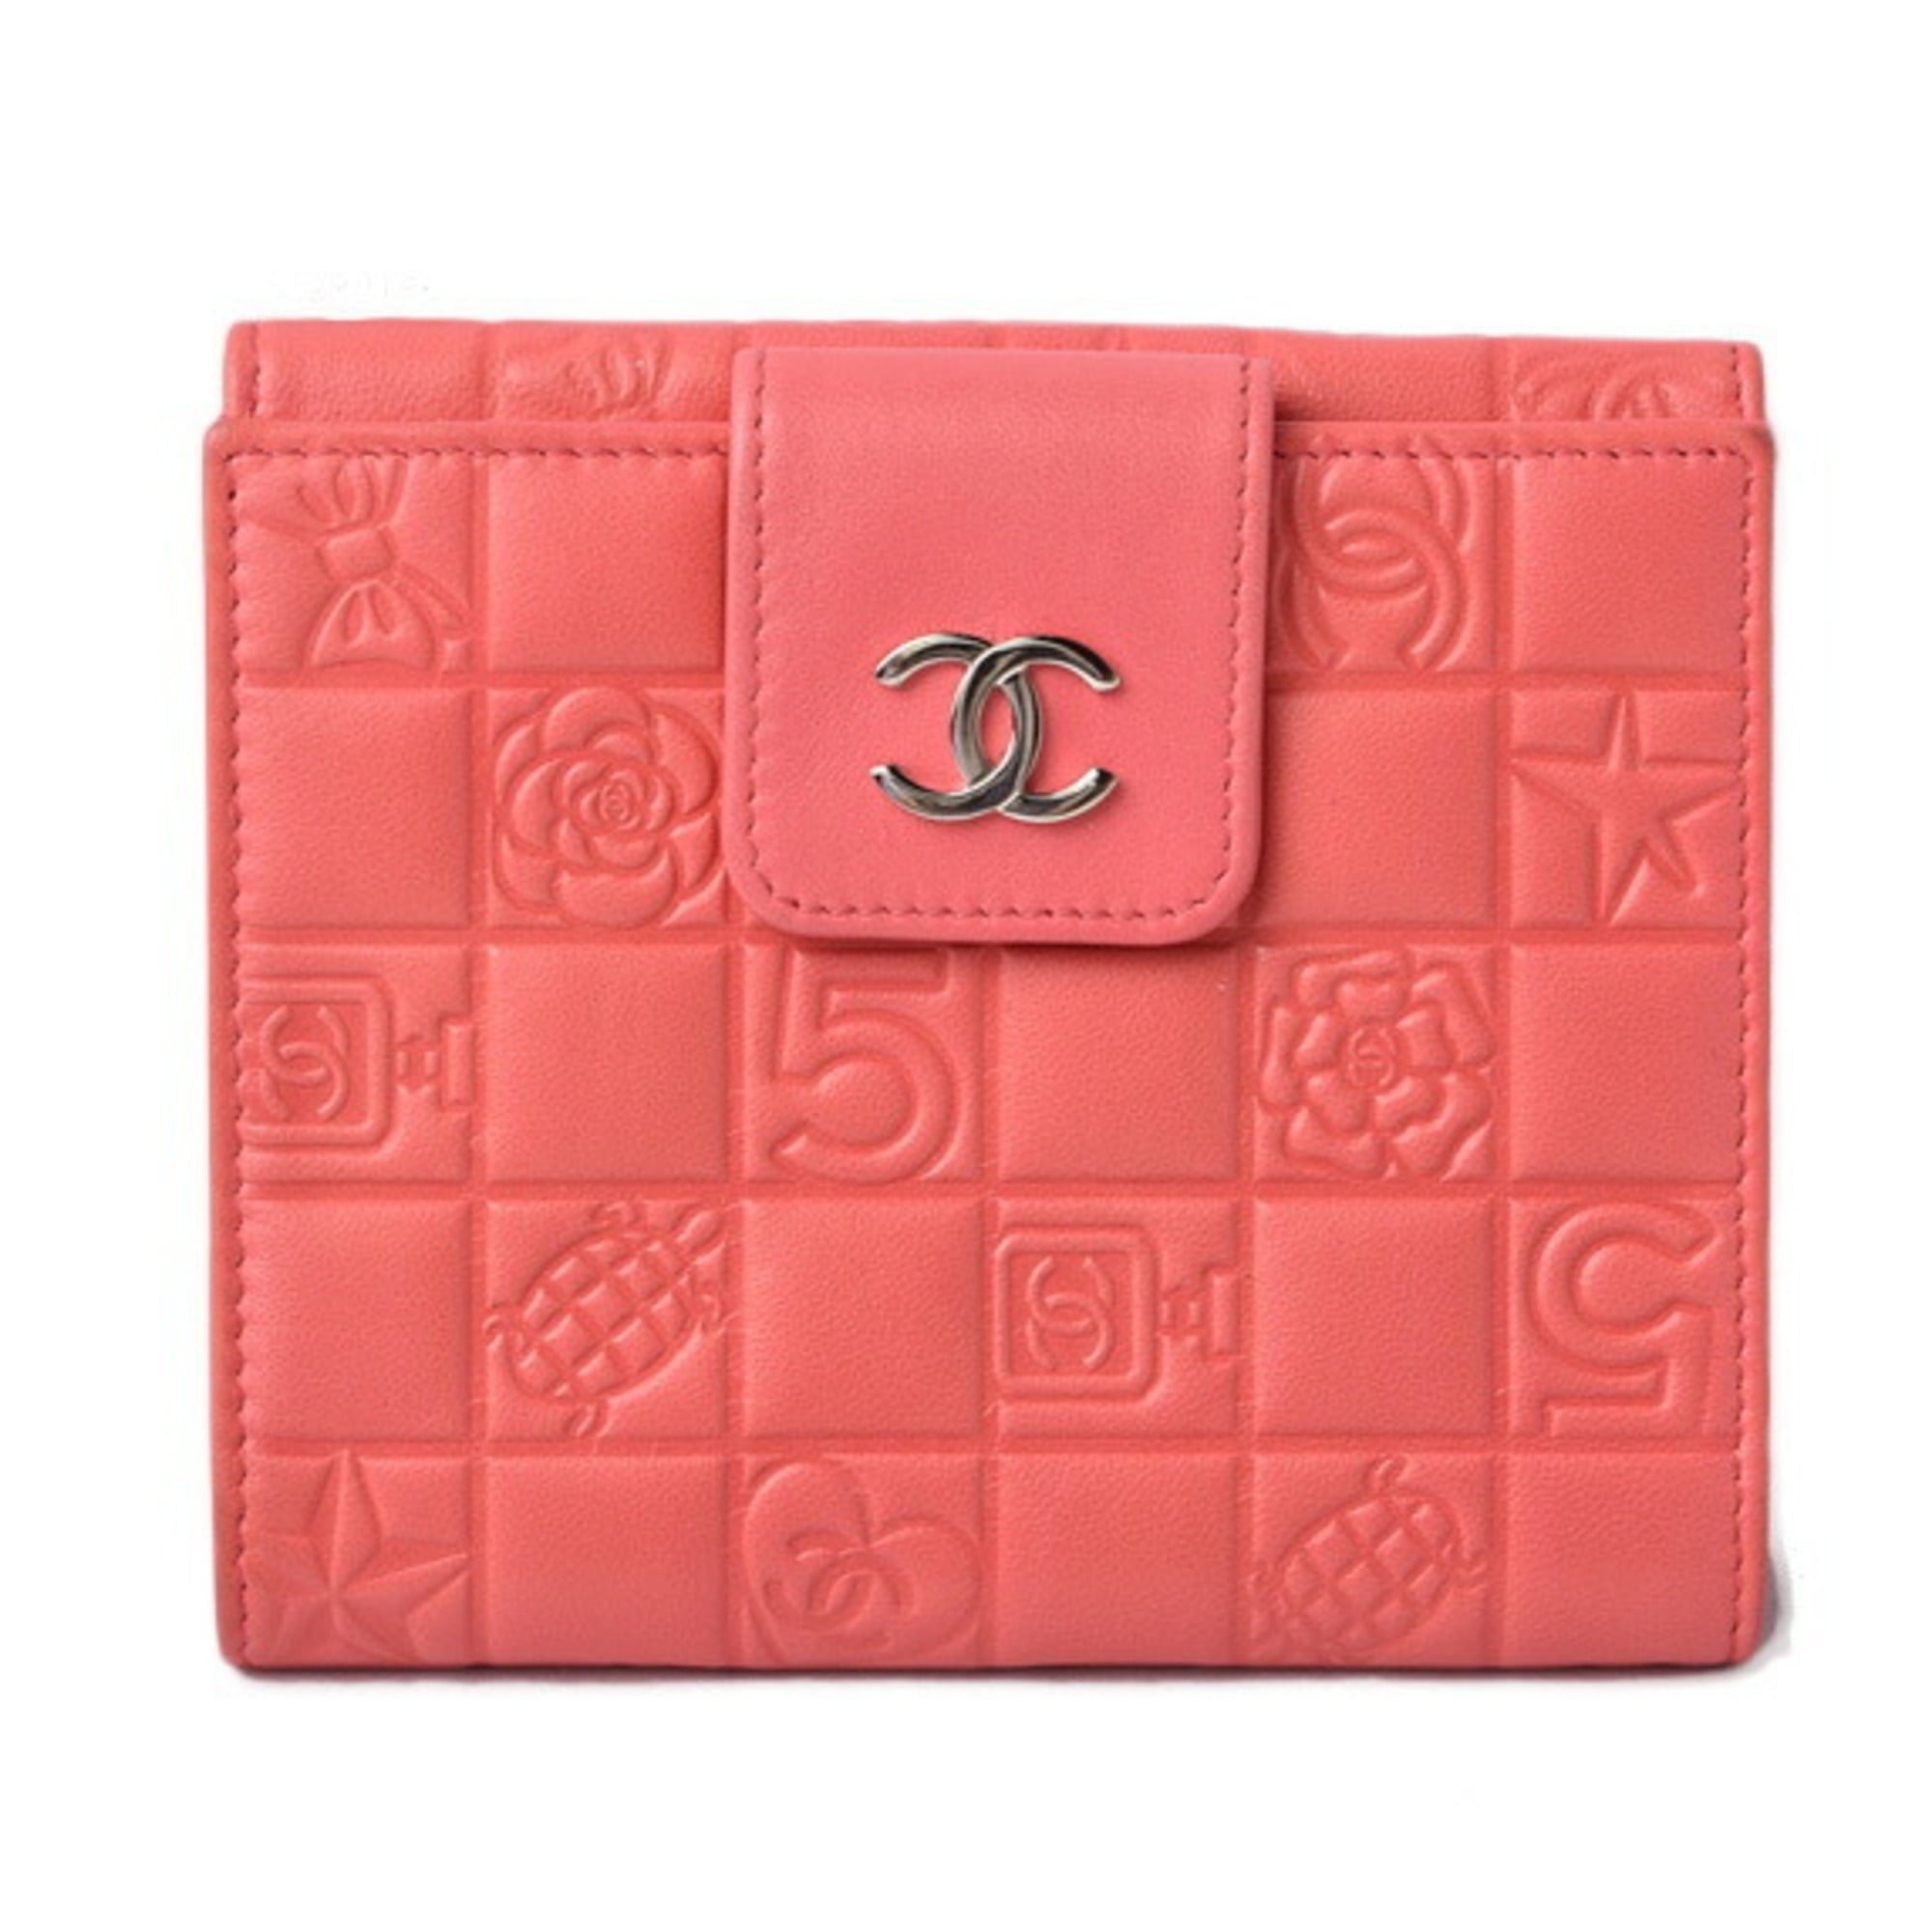 Chanel Folding Lambskin Icon Wallet